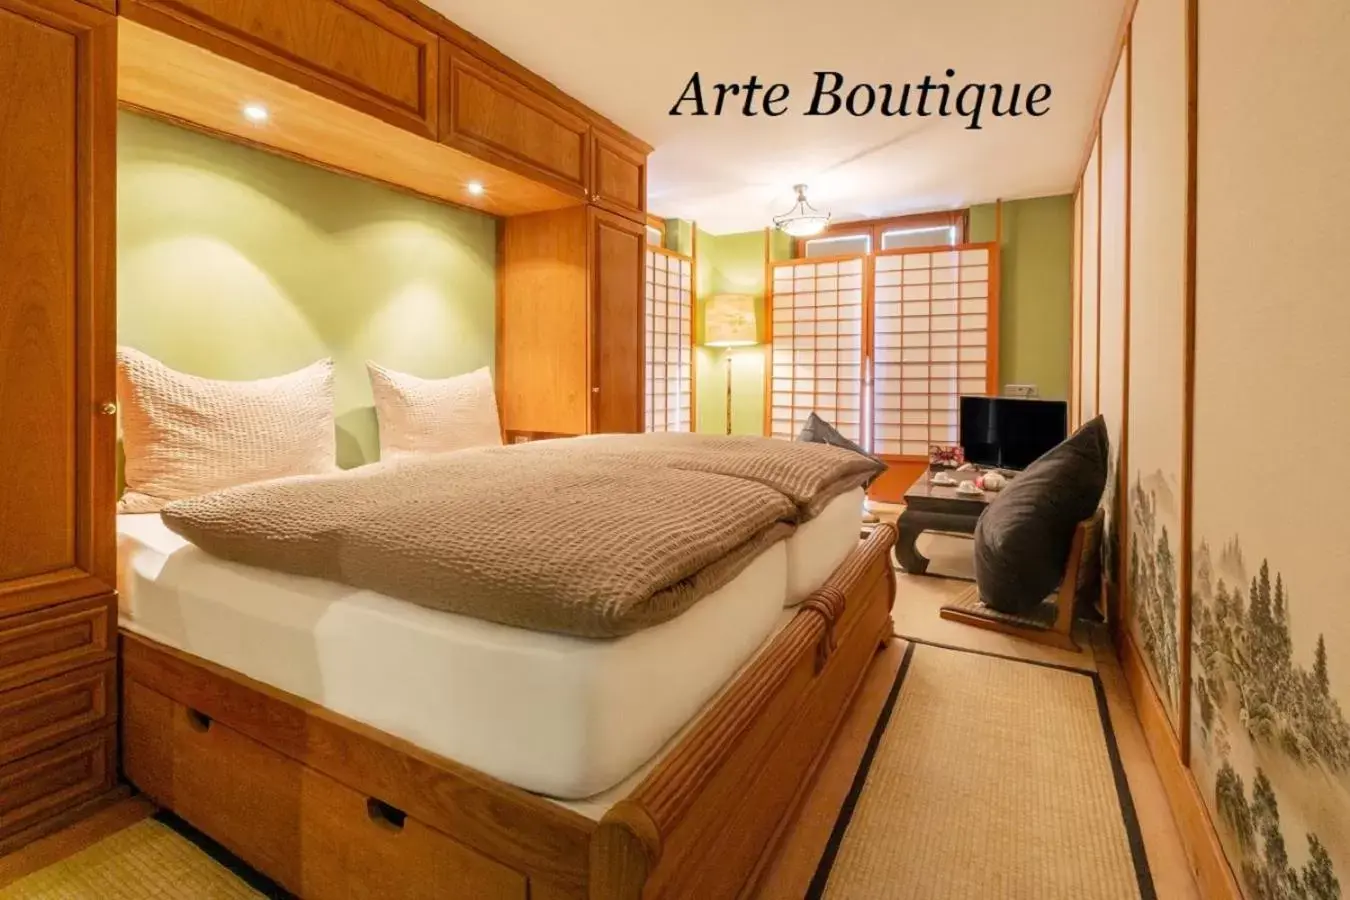 Bedroom in Hotel Arte